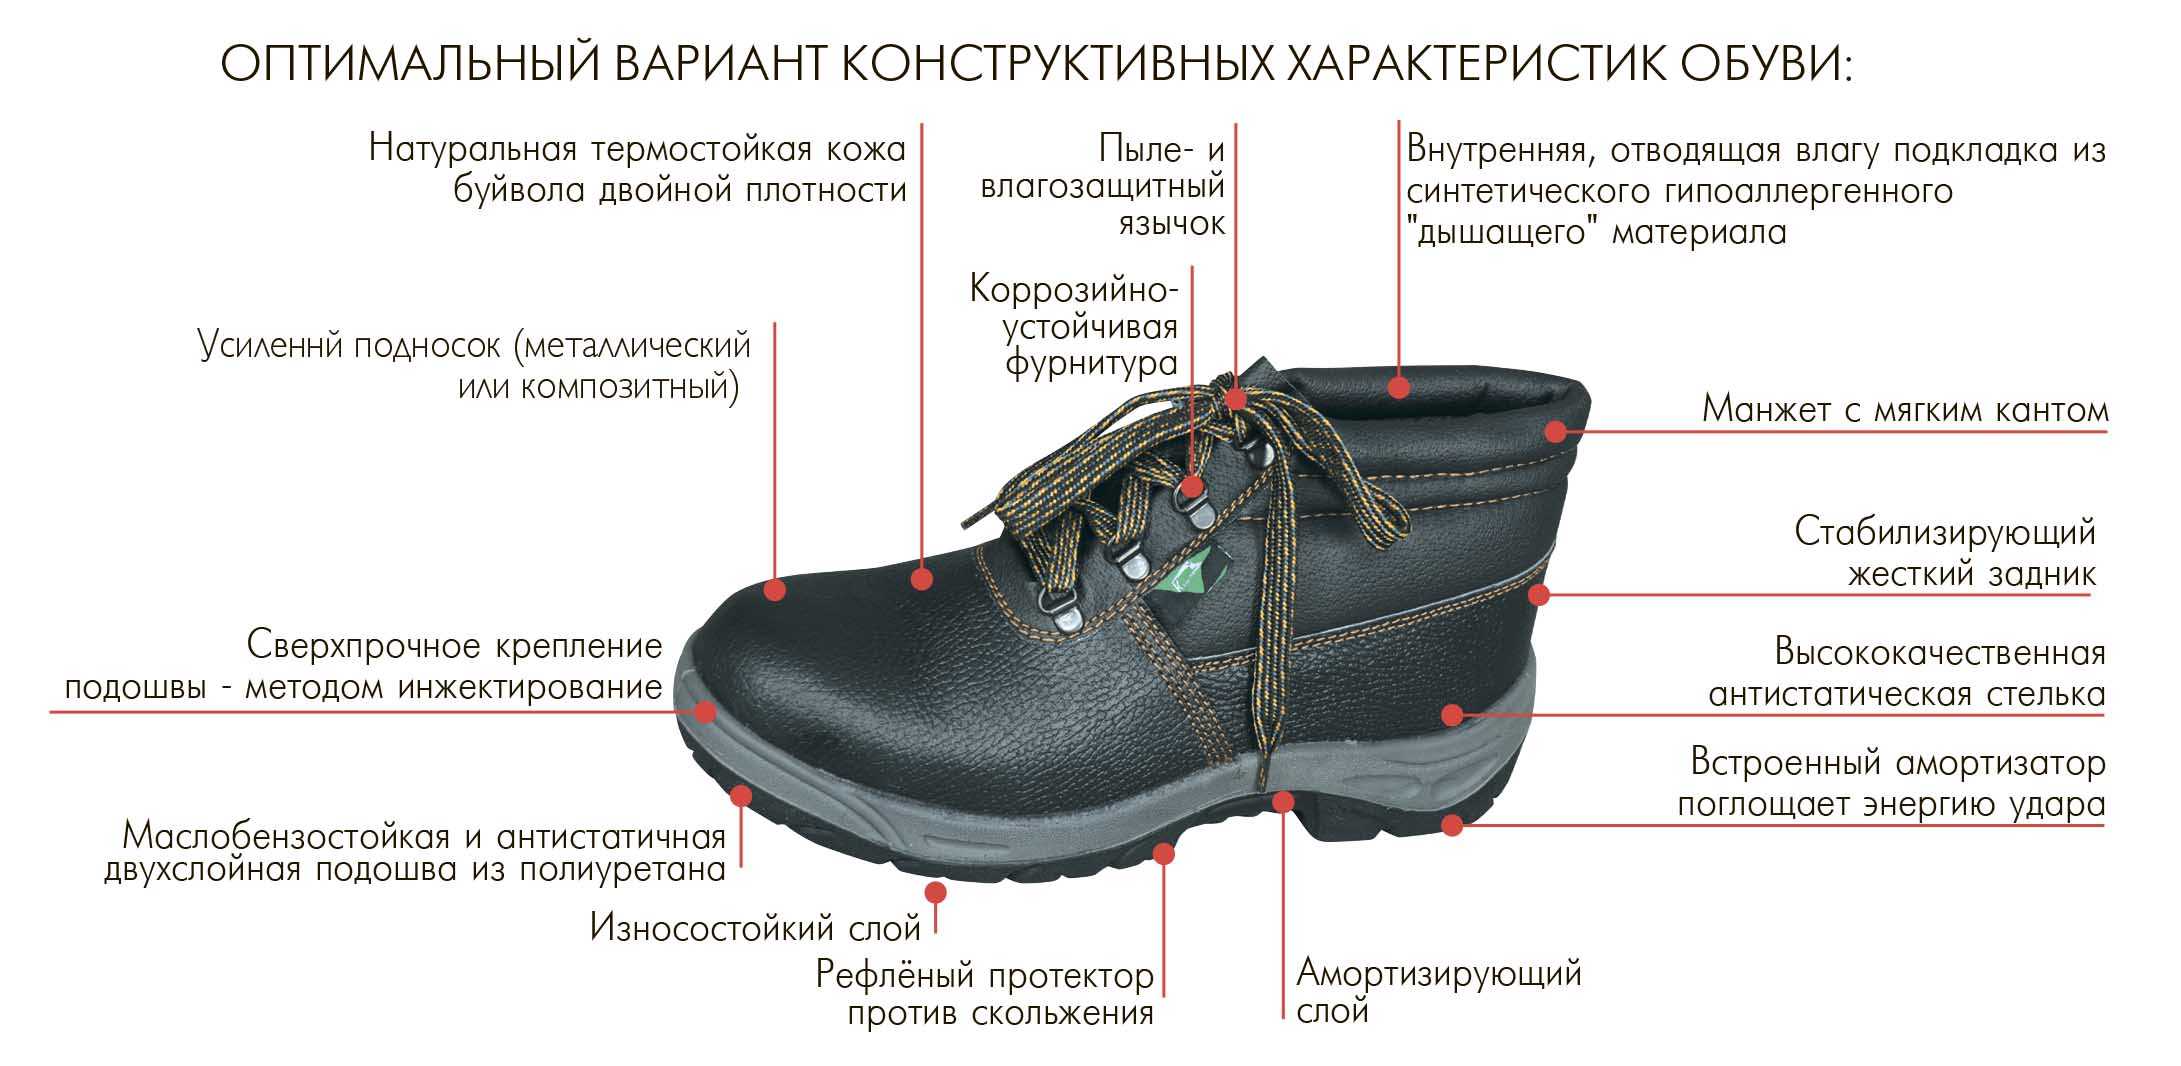 При длительном использовании подошва обуви изнашивается впр. Строение ботинка. Специальная обувь для рабочих. Ботинки для производства.